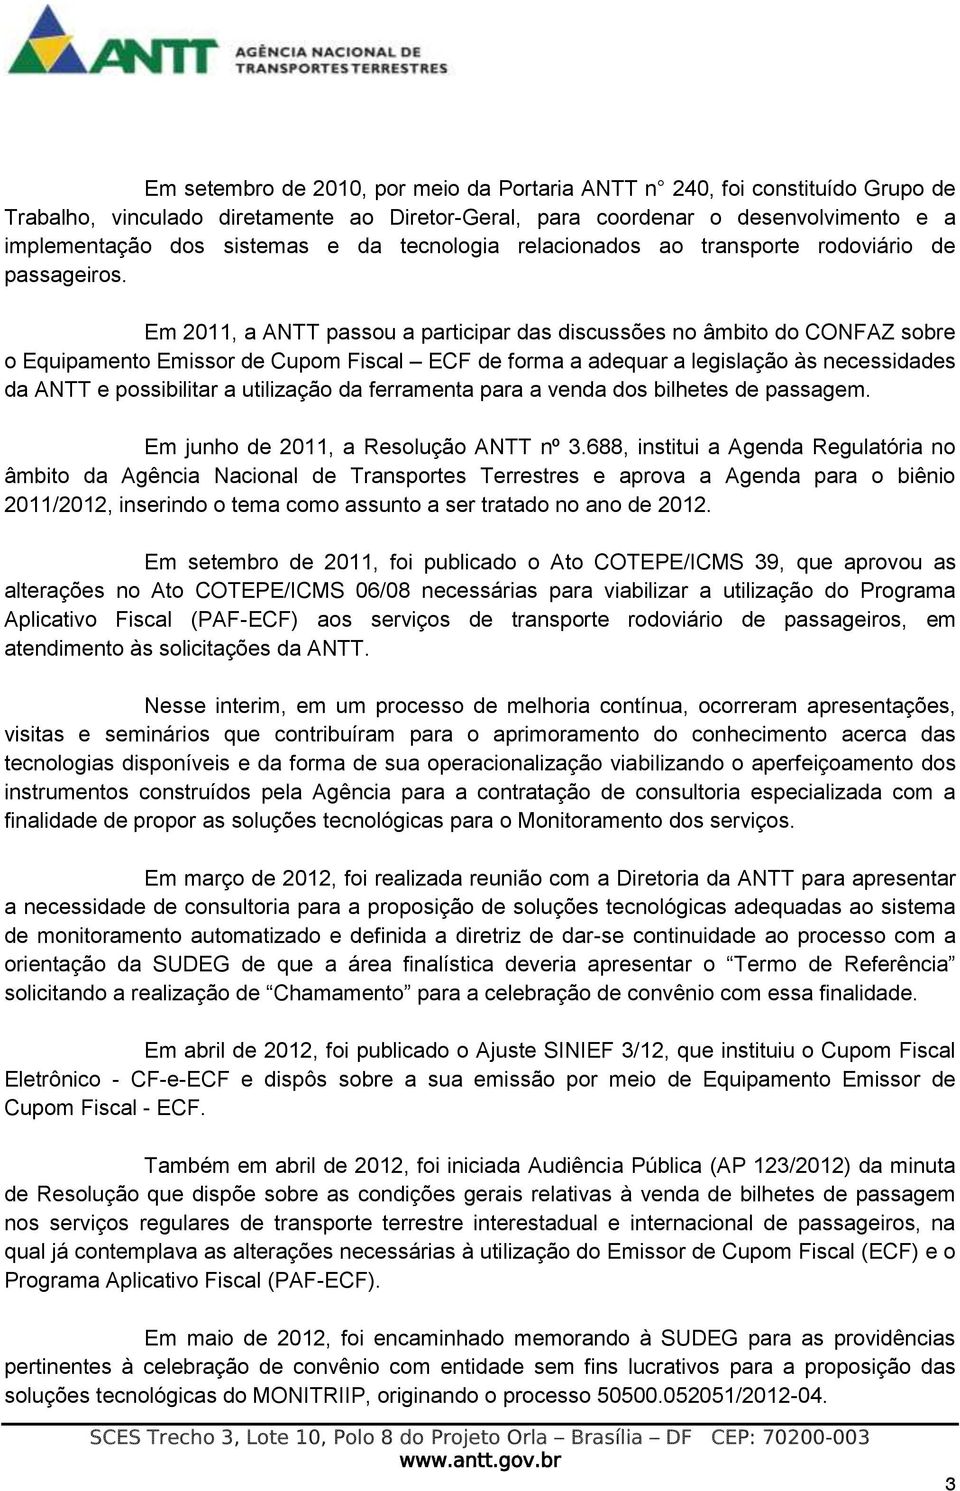 Em 2011, a ANTT passou a participar das discussões no âmbito do CONFAZ sobre o Equipamento Emissor de Cupom Fiscal ECF de forma a adequar a legislação às necessidades da ANTT e possibilitar a